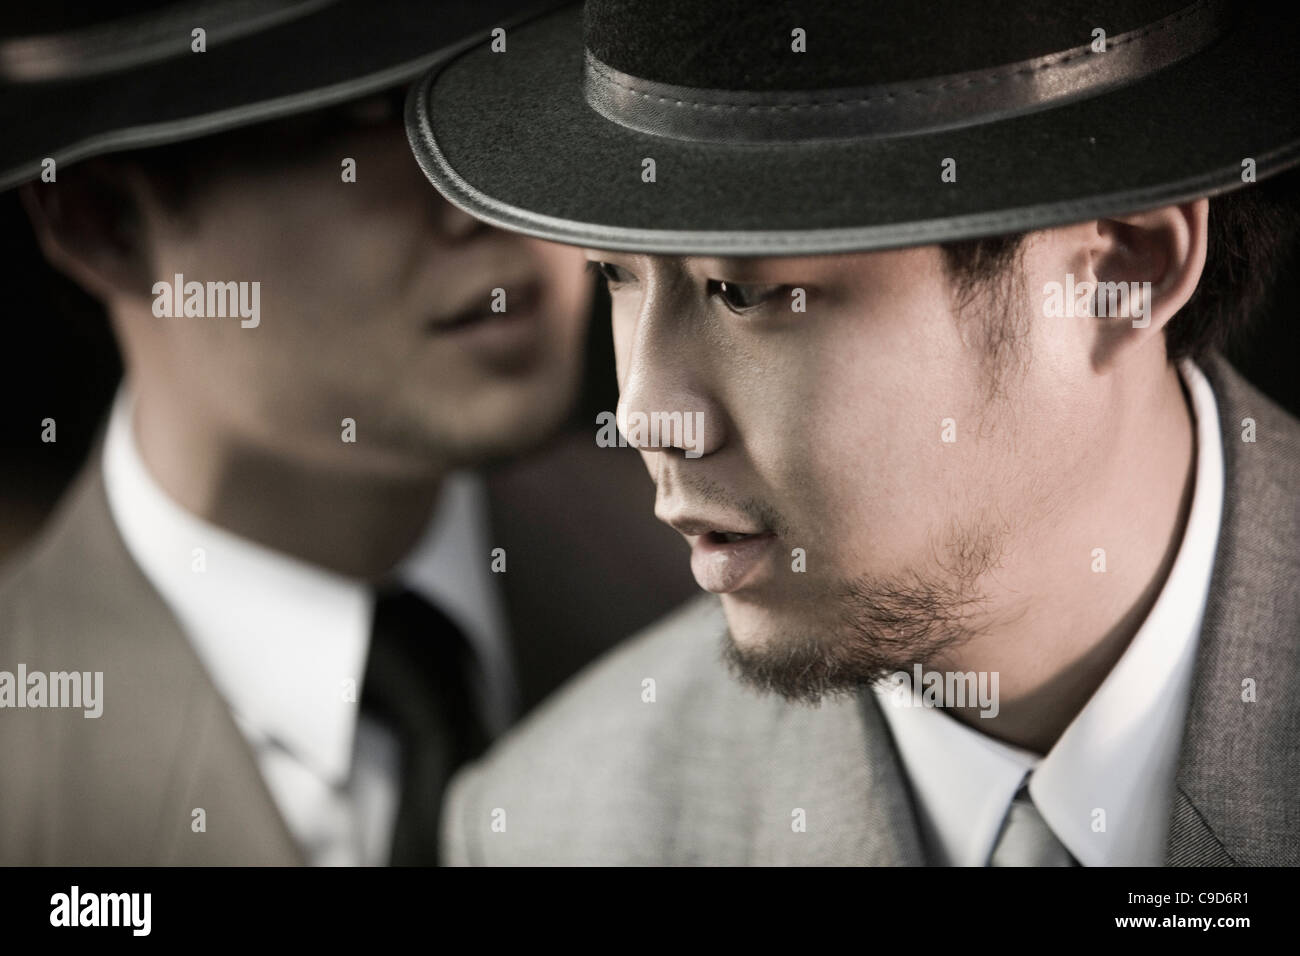 Portrait de deux jeunes hommes asiatiques portant des costumes et chapeaux Banque D'Images